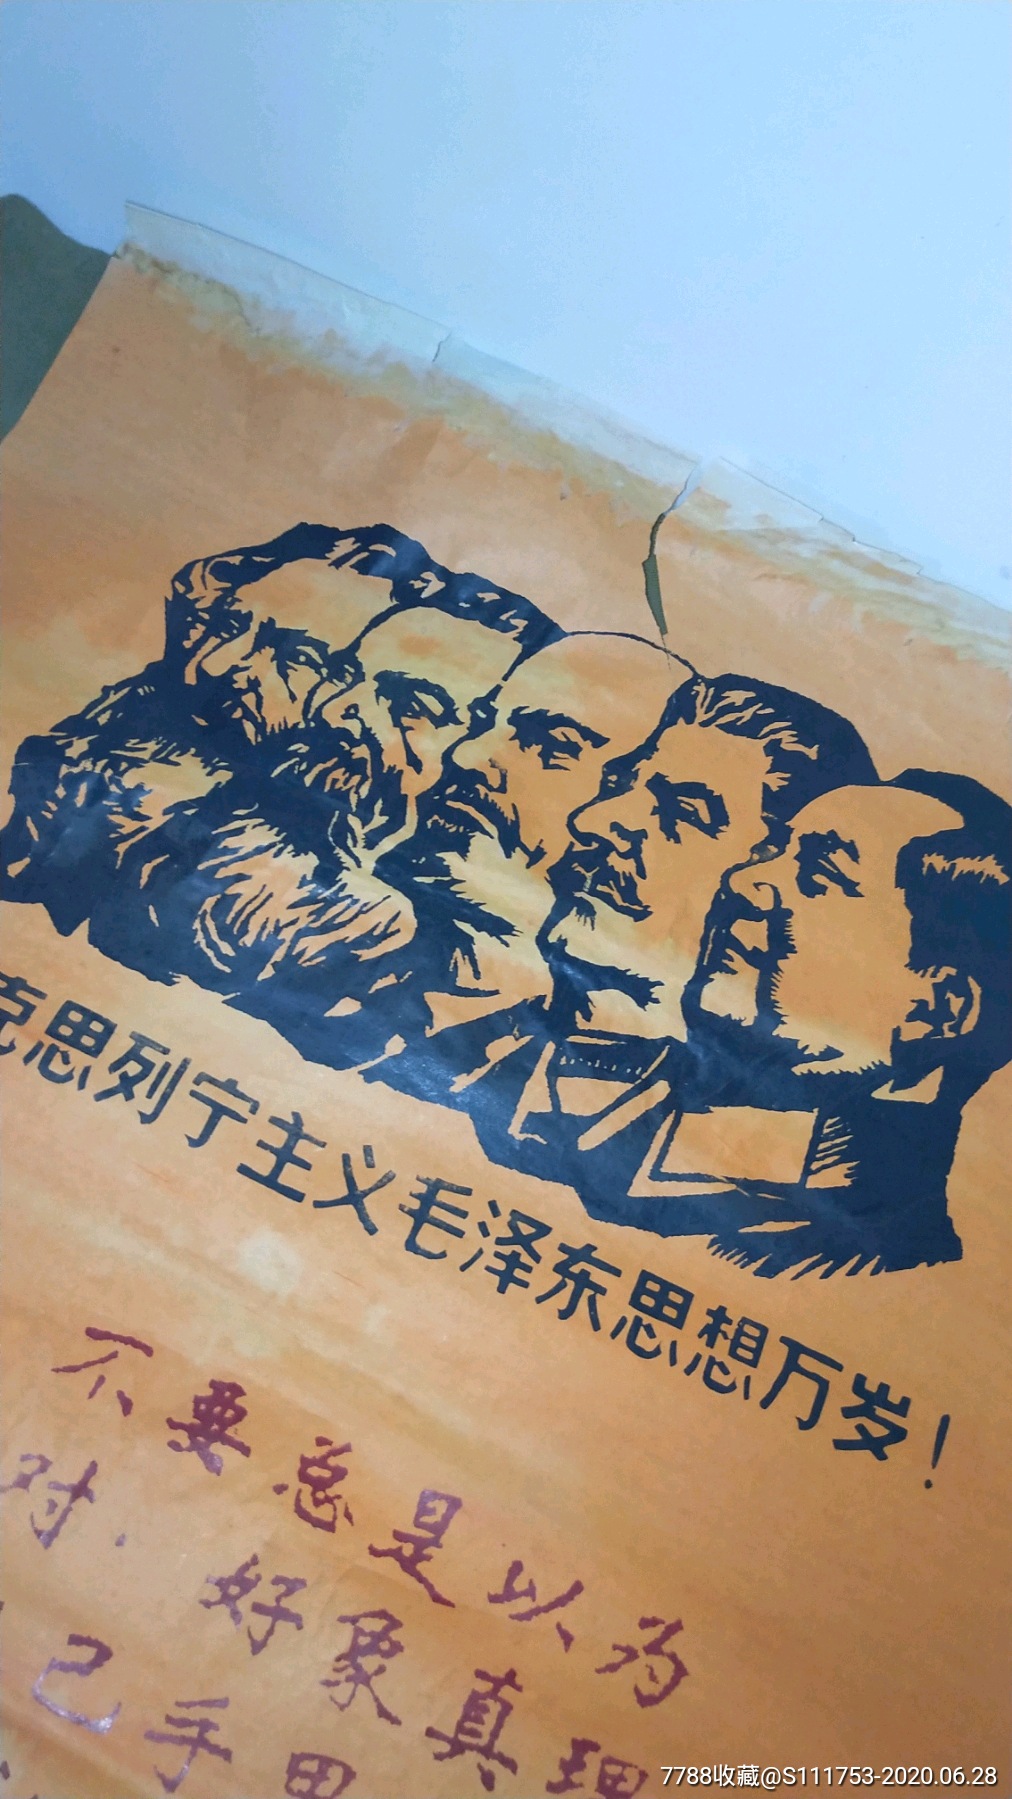 文革宣传画大字报/五彩纸(橘红色)